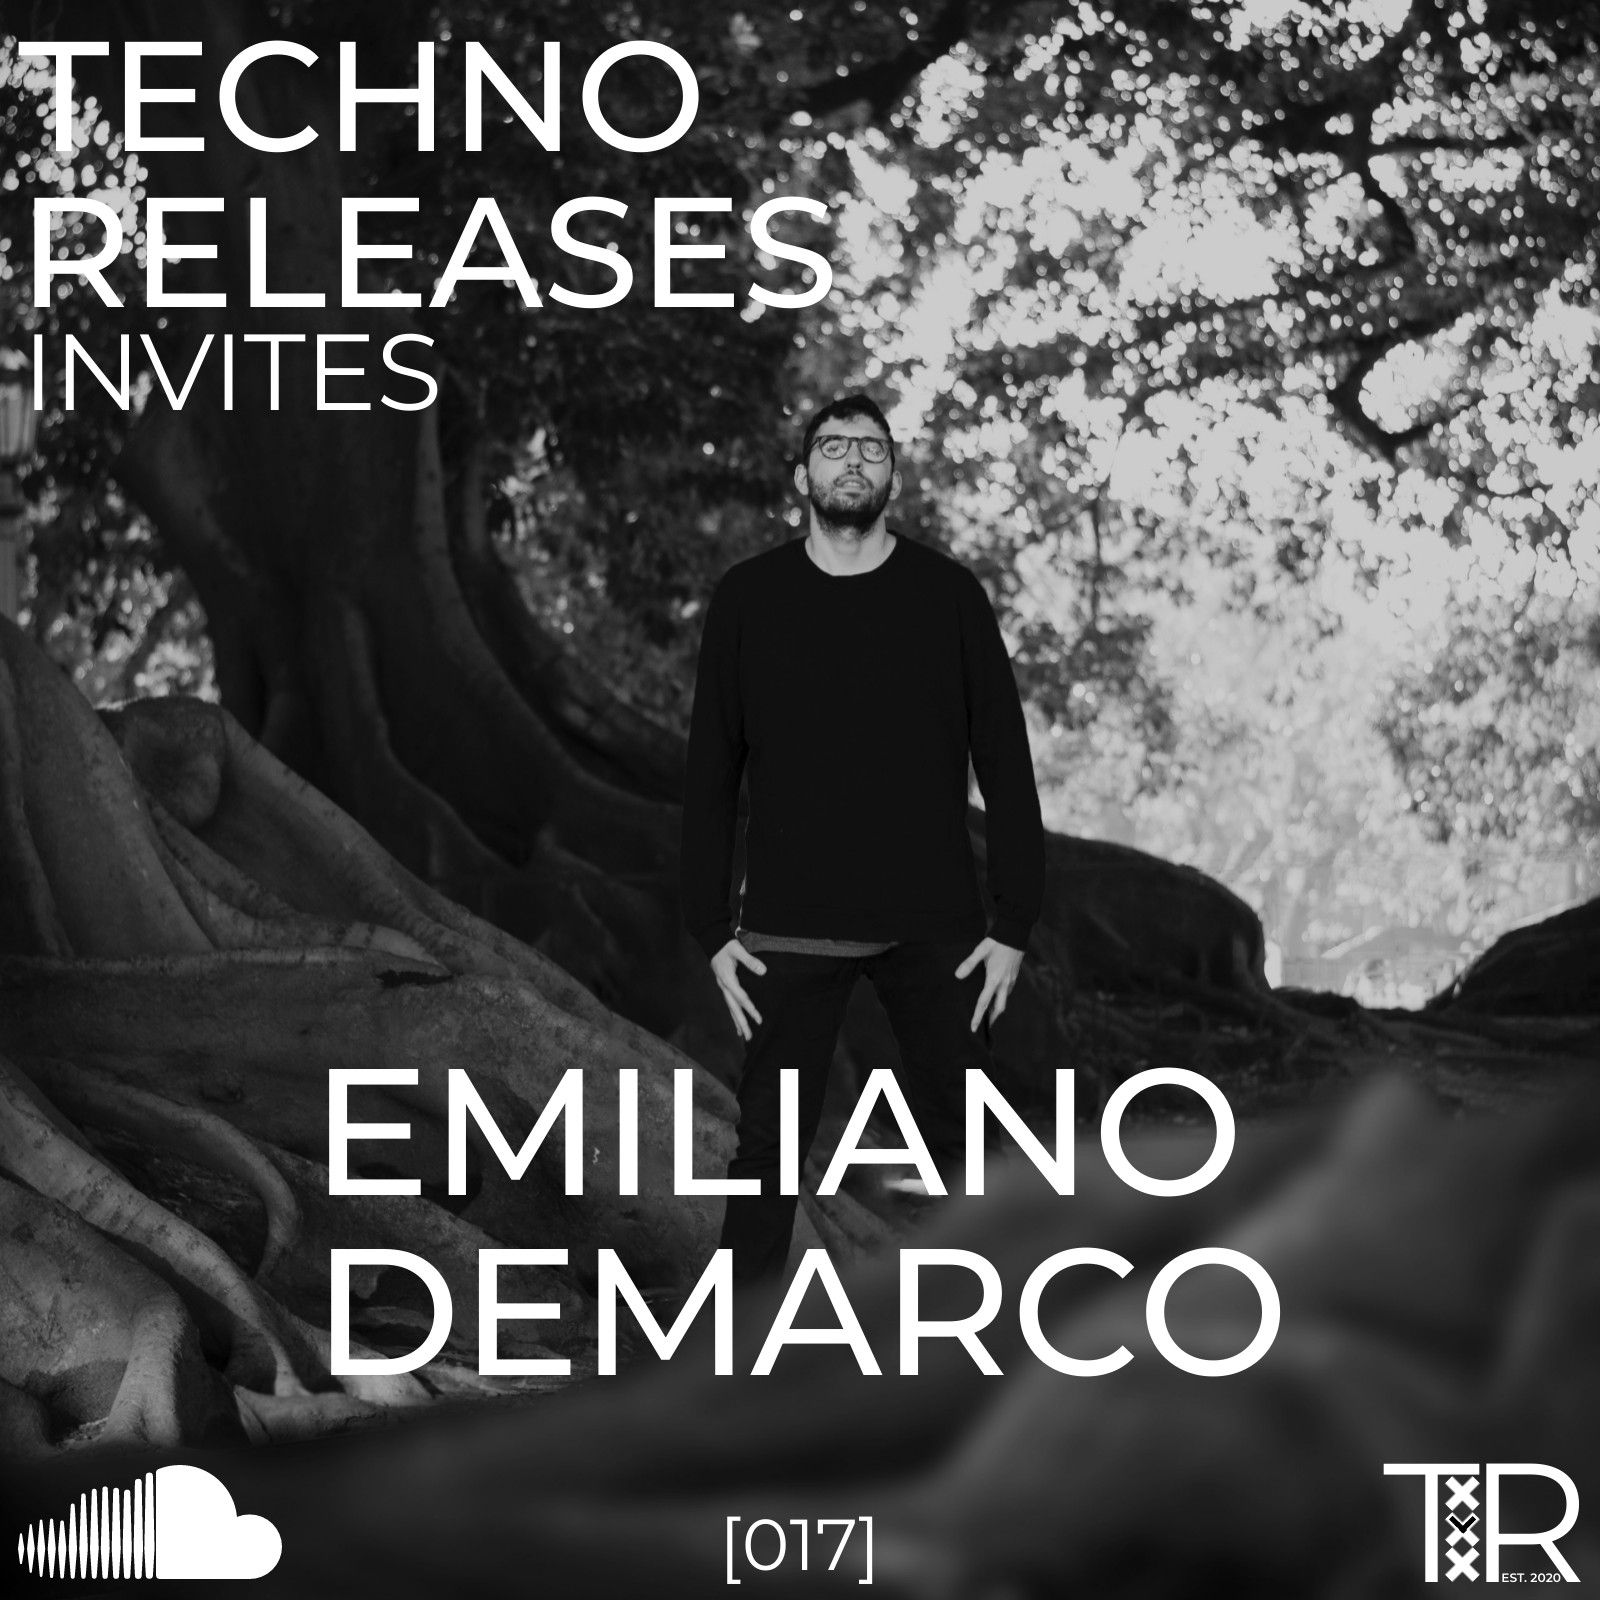 Pakua Techno Releases Invites Emiliano Demarco - [017]